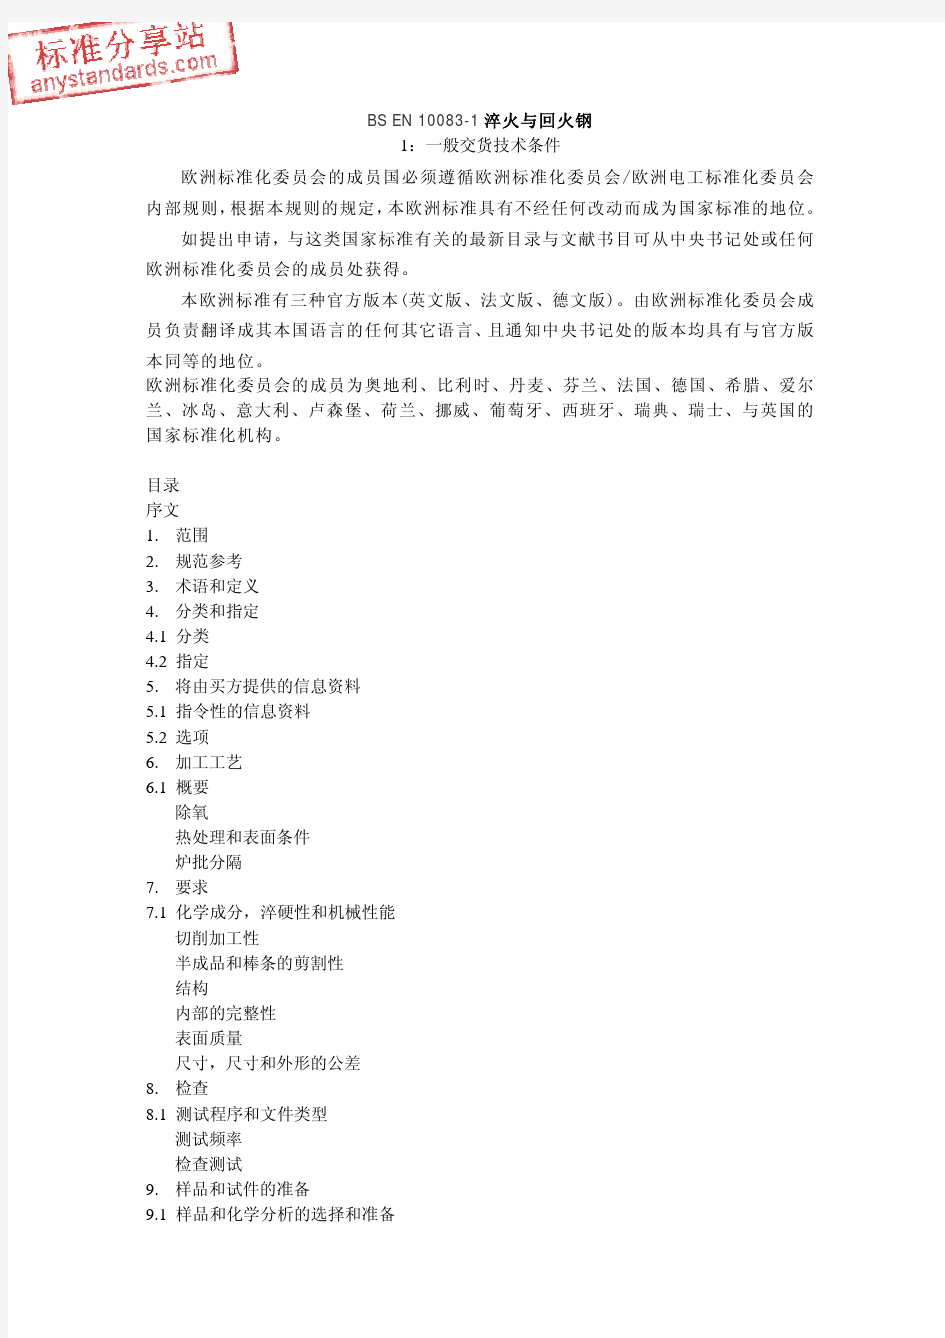 BS EN 10083-1 中文版参考